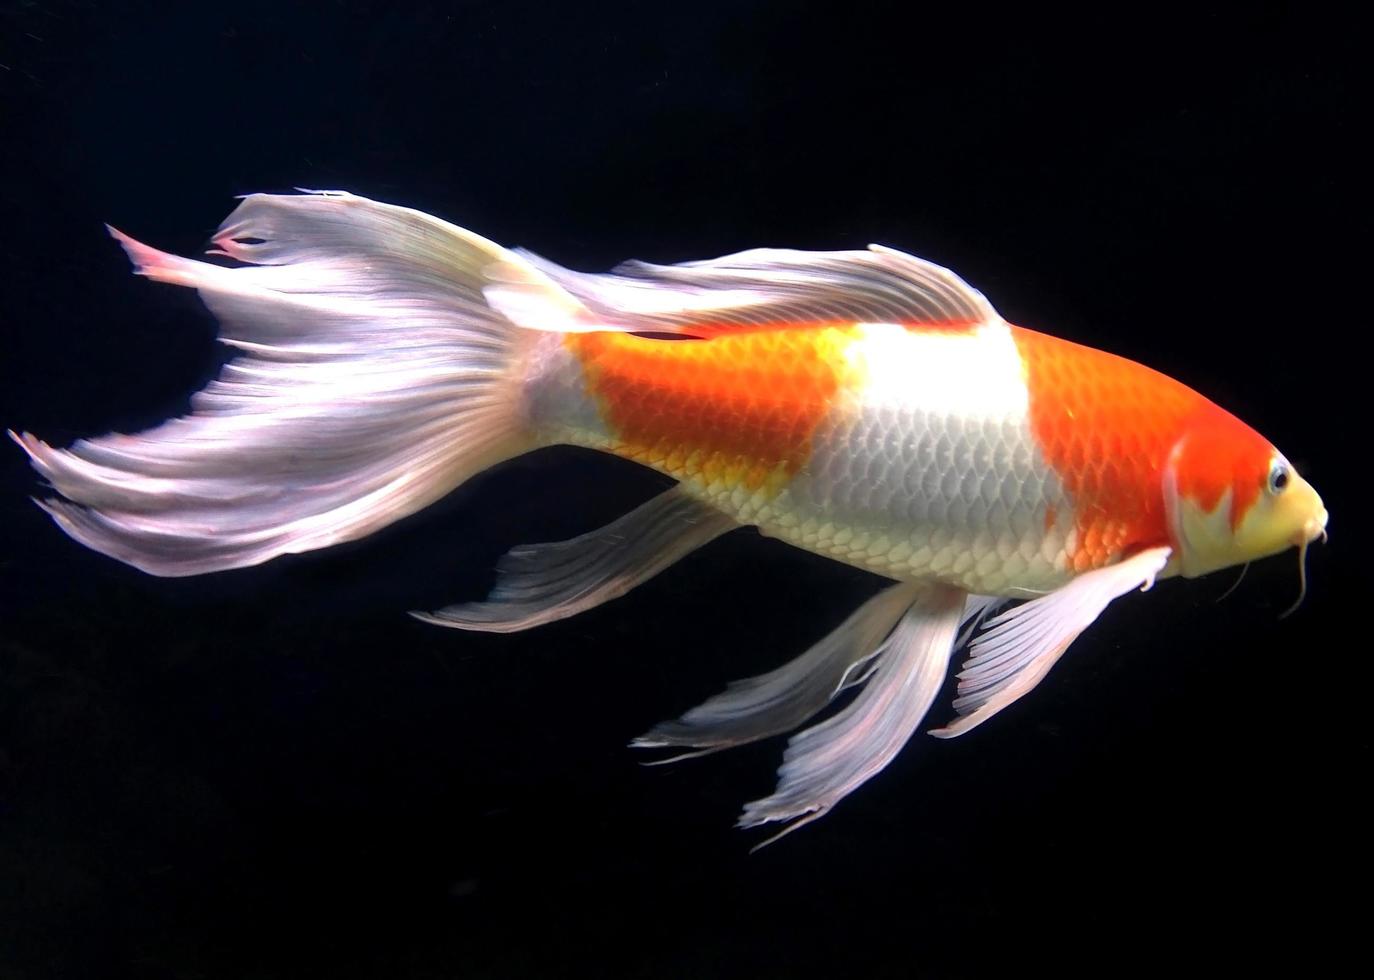 White and orange fish in aquarium photo